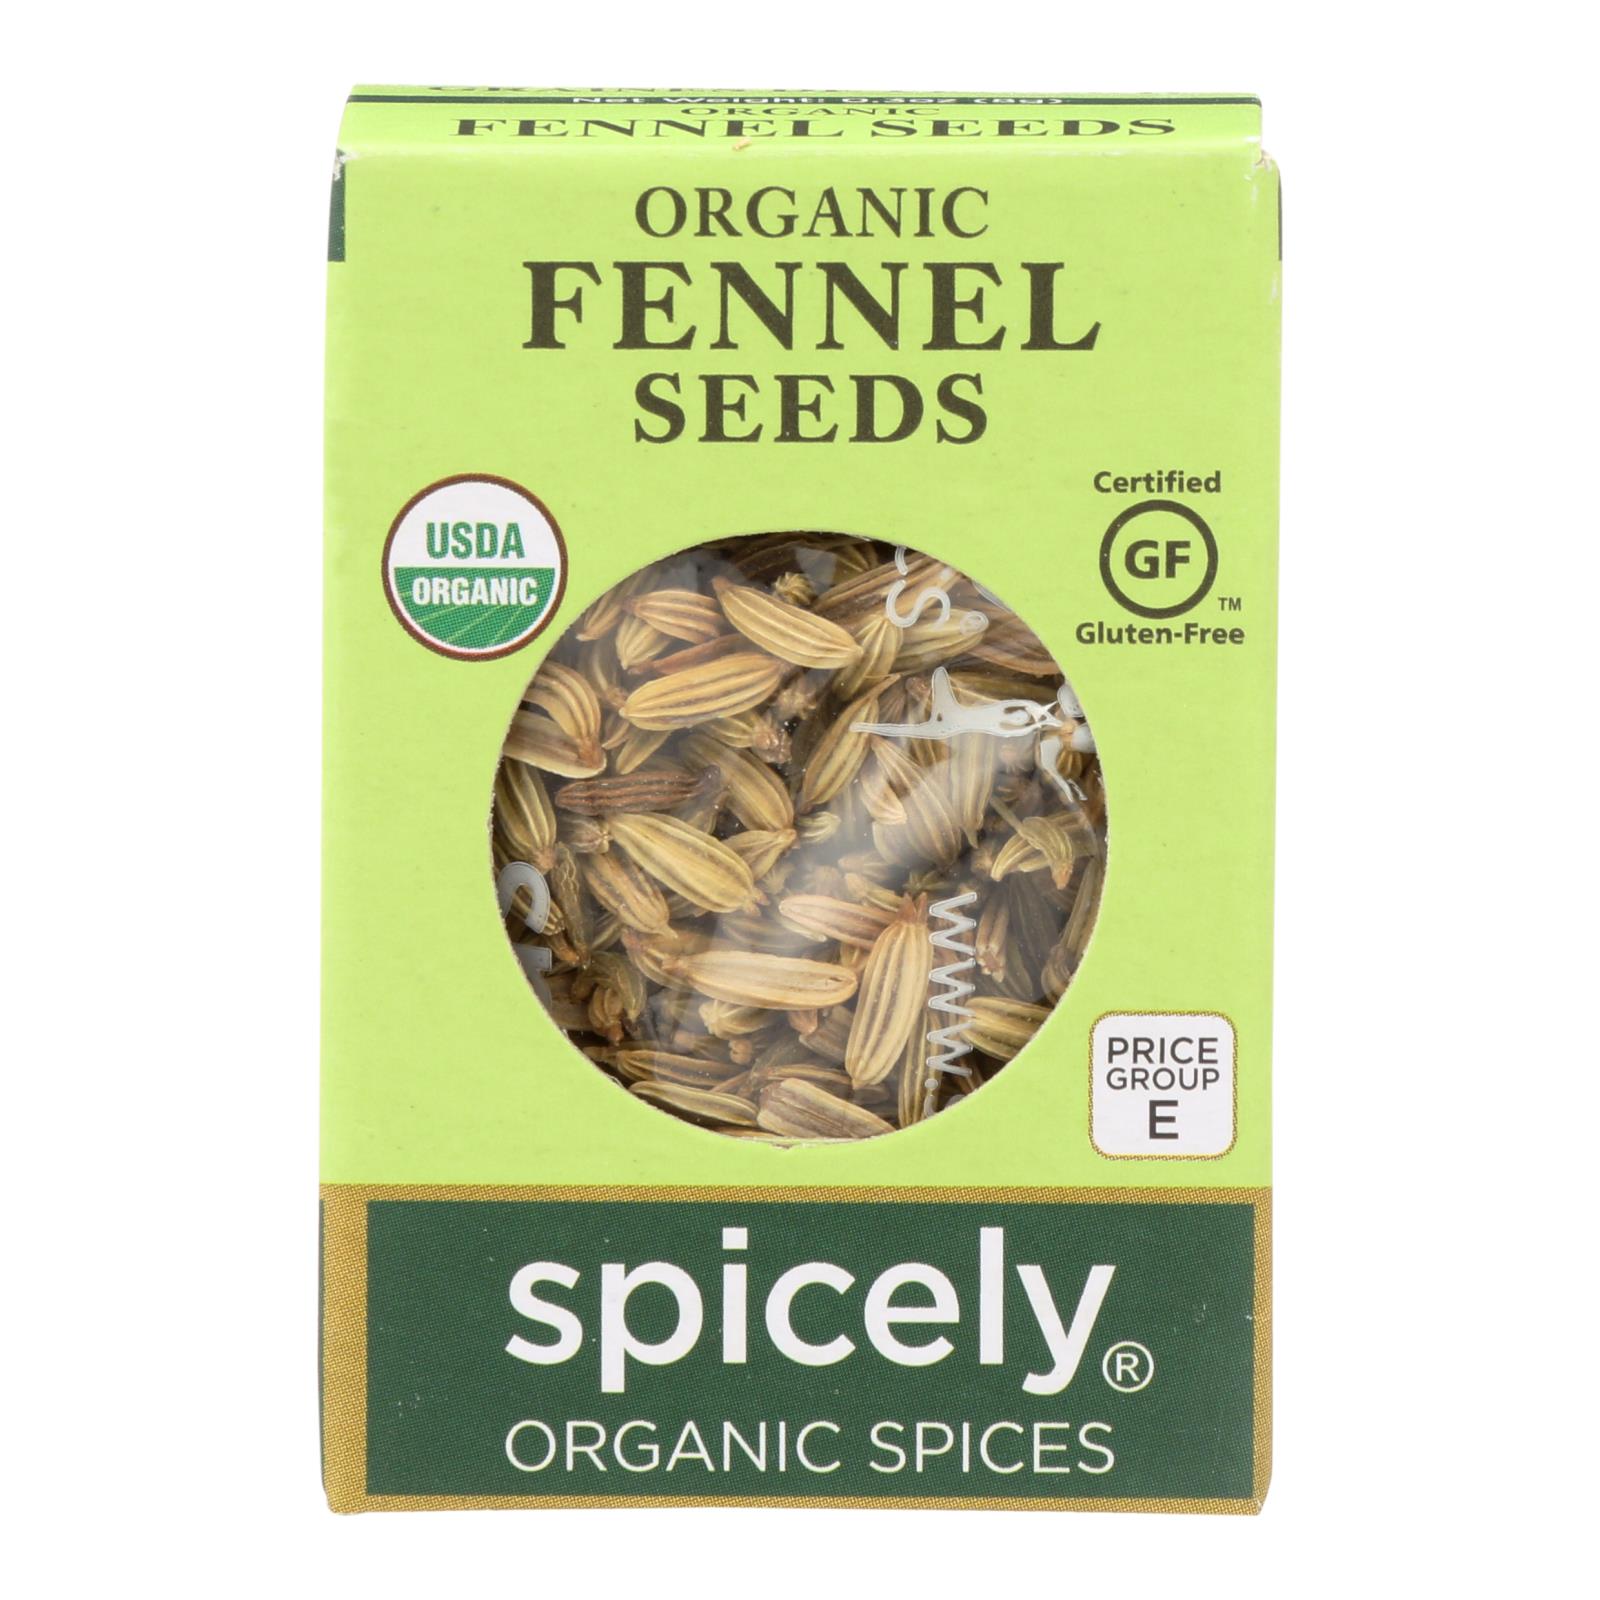 Spicely Organics - Organic Fennel Seed - 6개 묶음상품 - 0.3 oz.